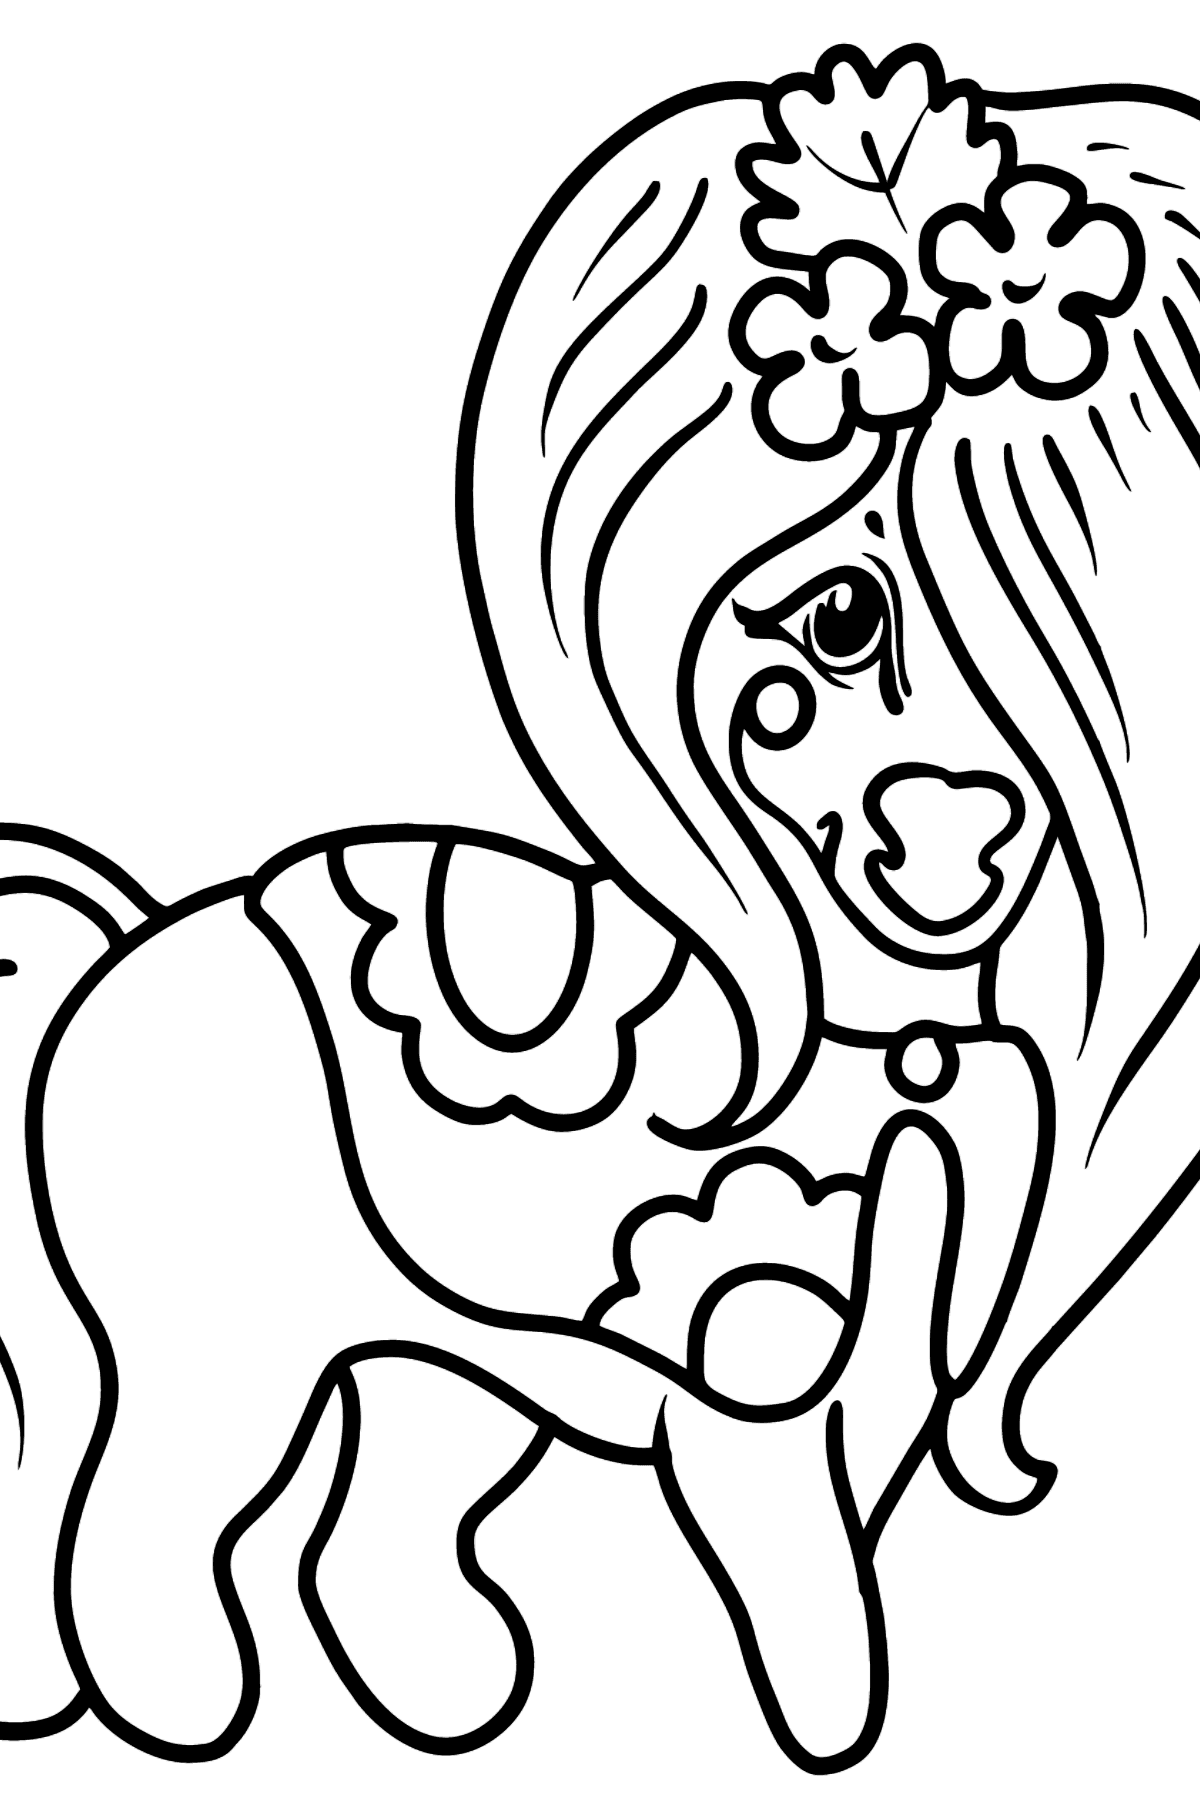 Раскраска Красивая Лошадка Пони - Картинки для Детей